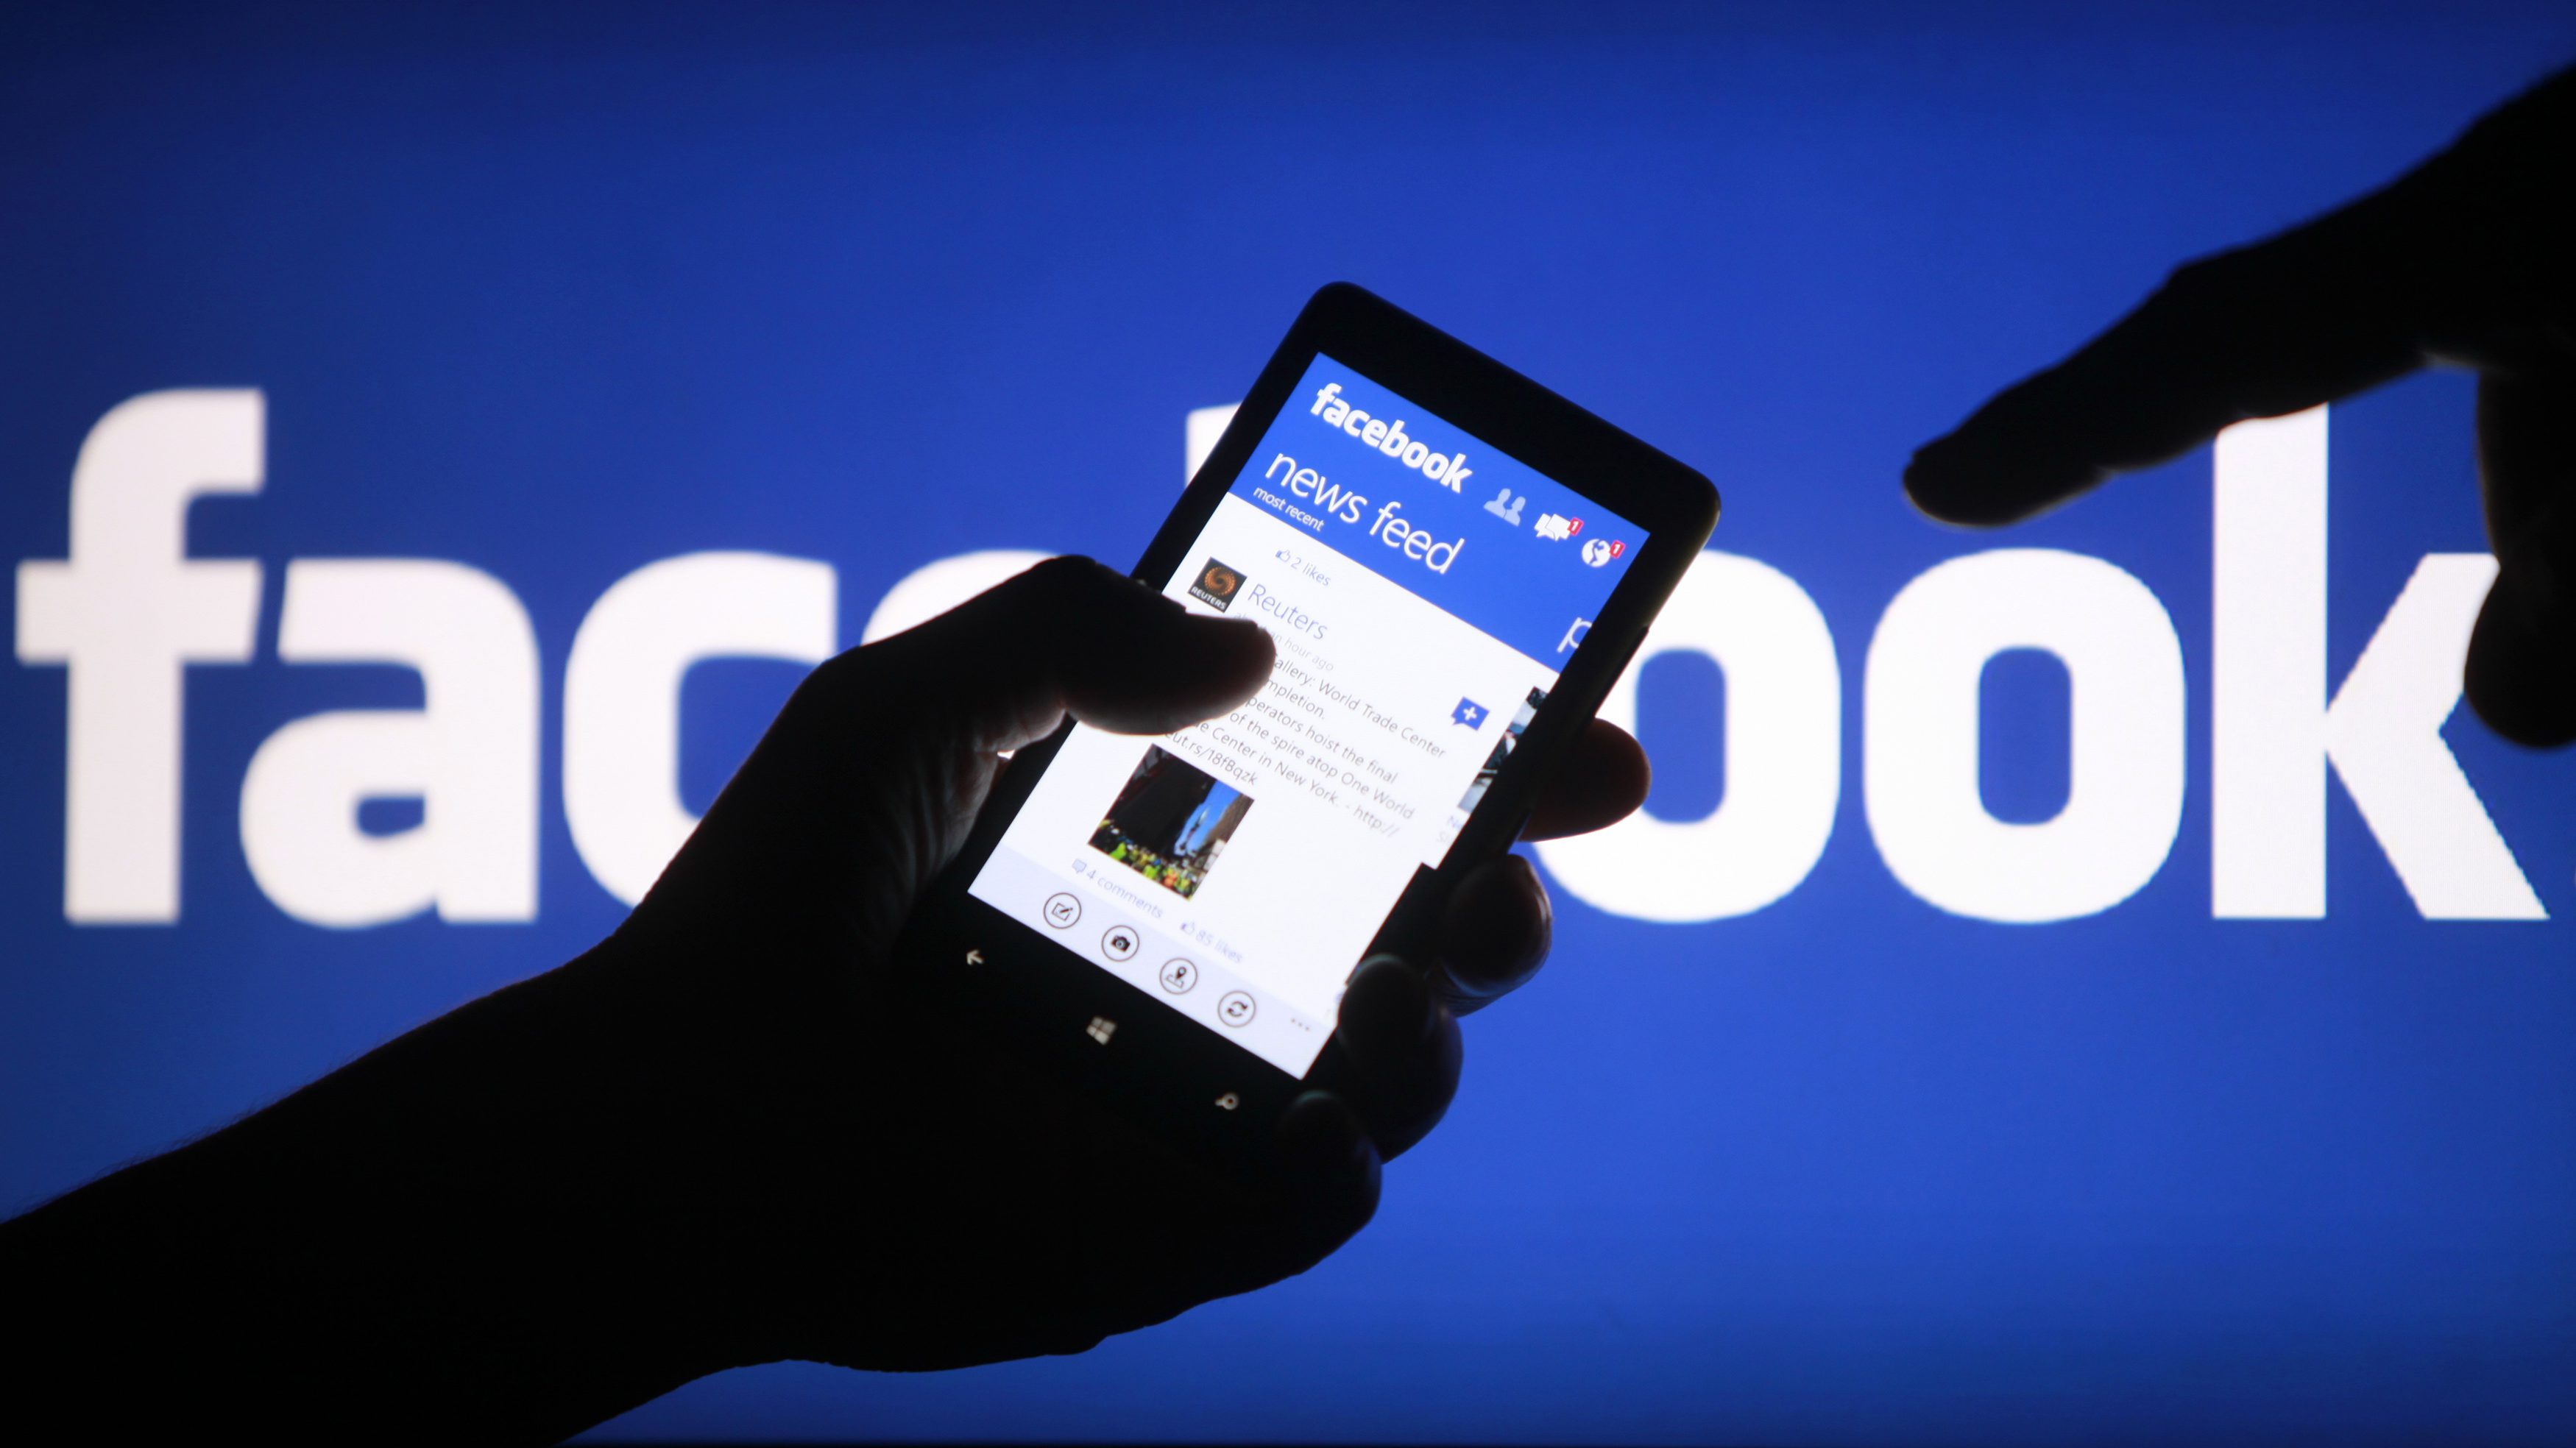 Facebook เปิดตัวฟีเจอร์ใหม่ แจ้งเตือนข่าวปลอมให้ผู้ใช้งานทราบ